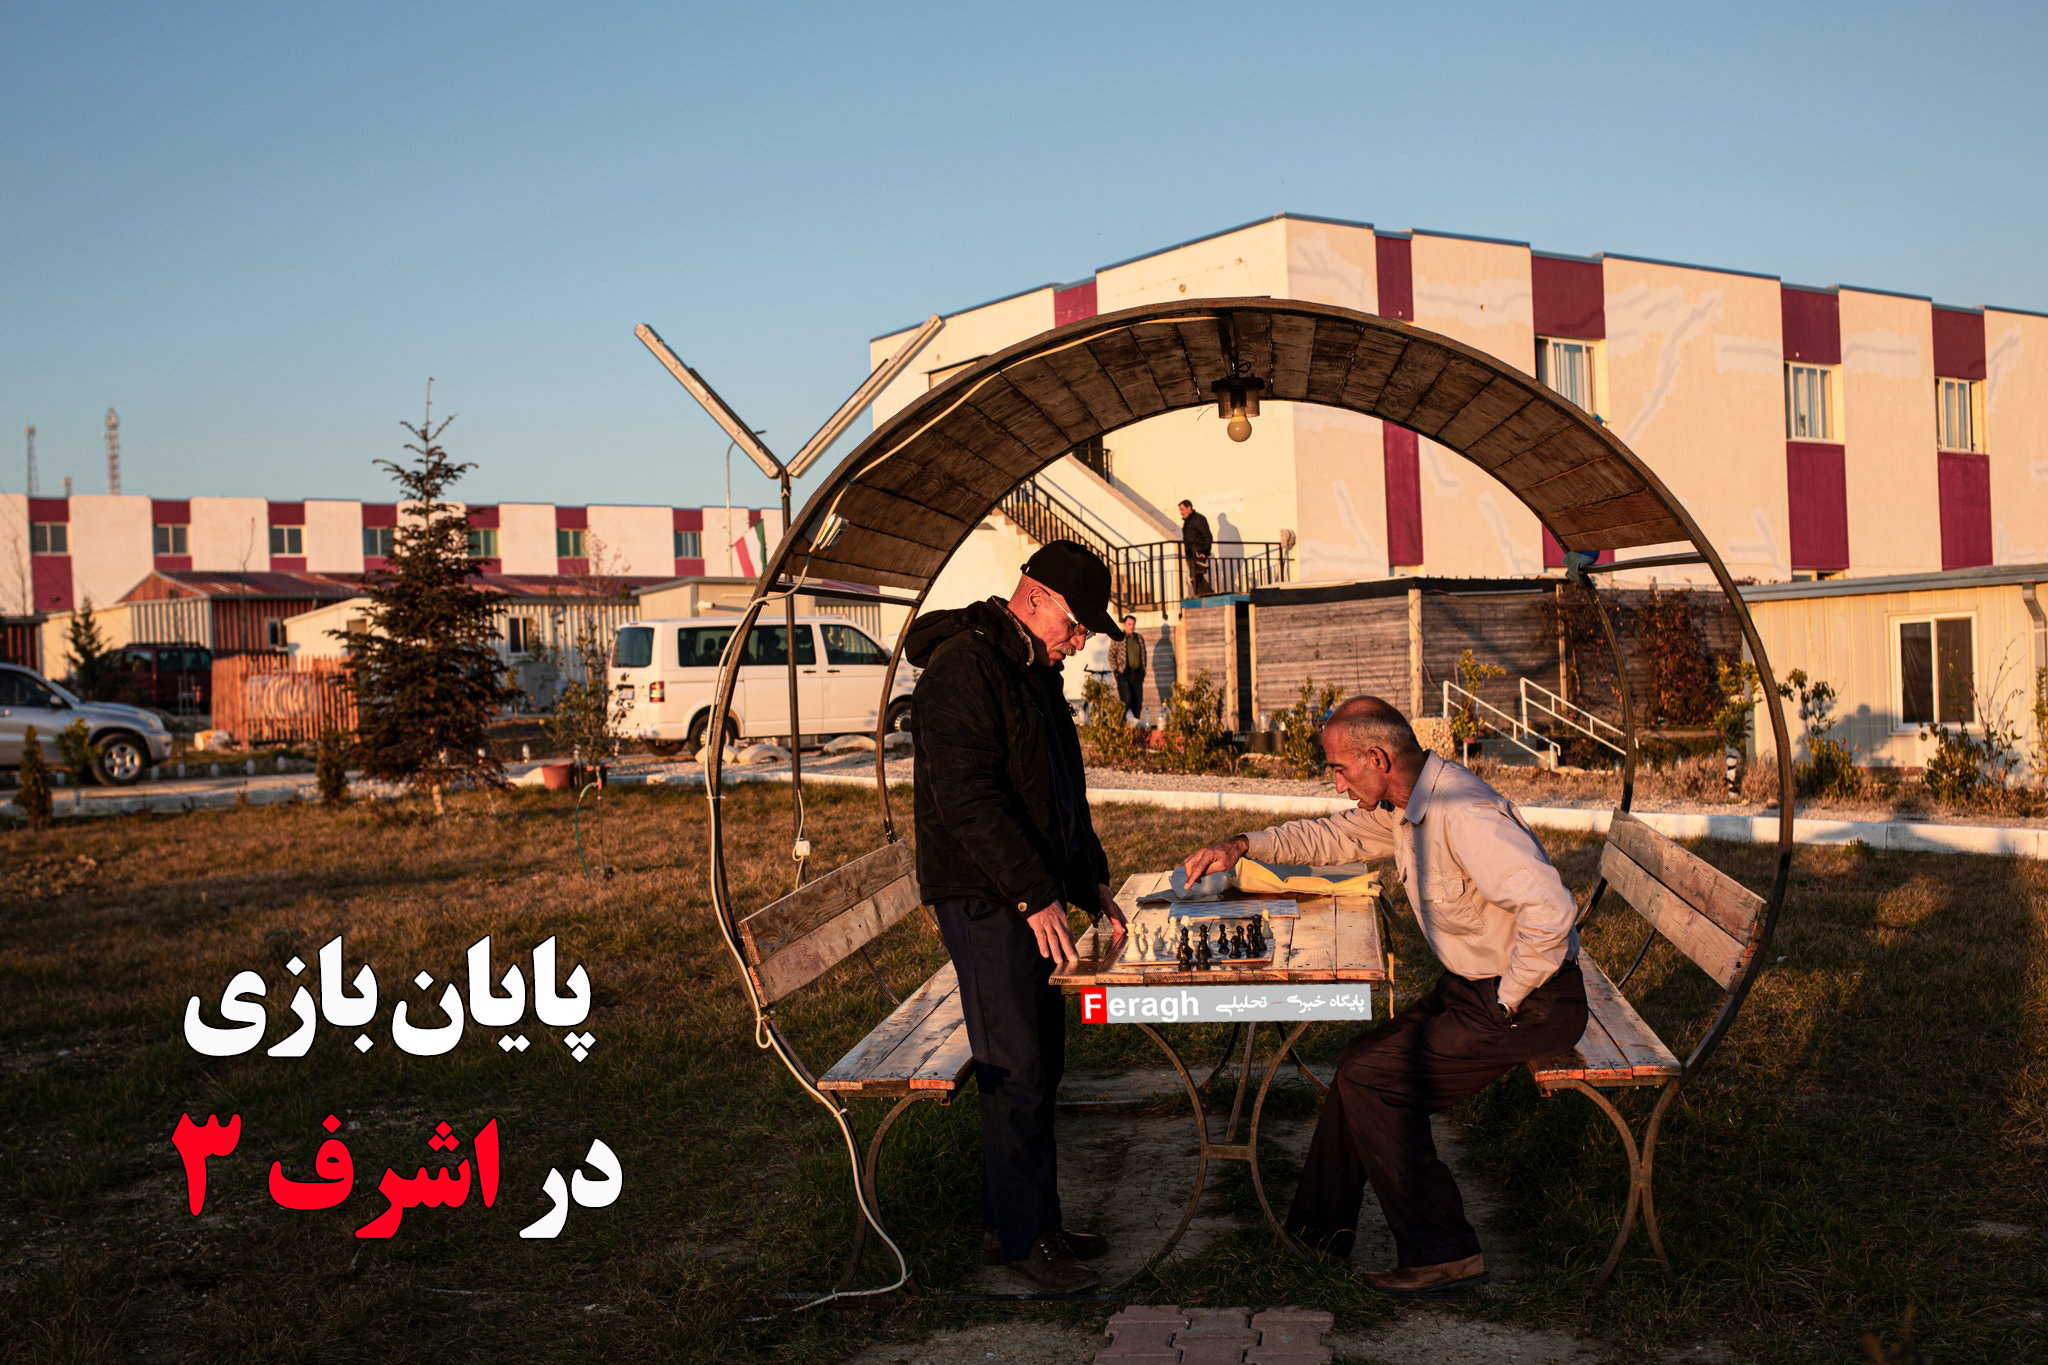 عاقبت اسیران سالمند در آلبانی کیش و مات است / پایان بازی در اشرف ۳